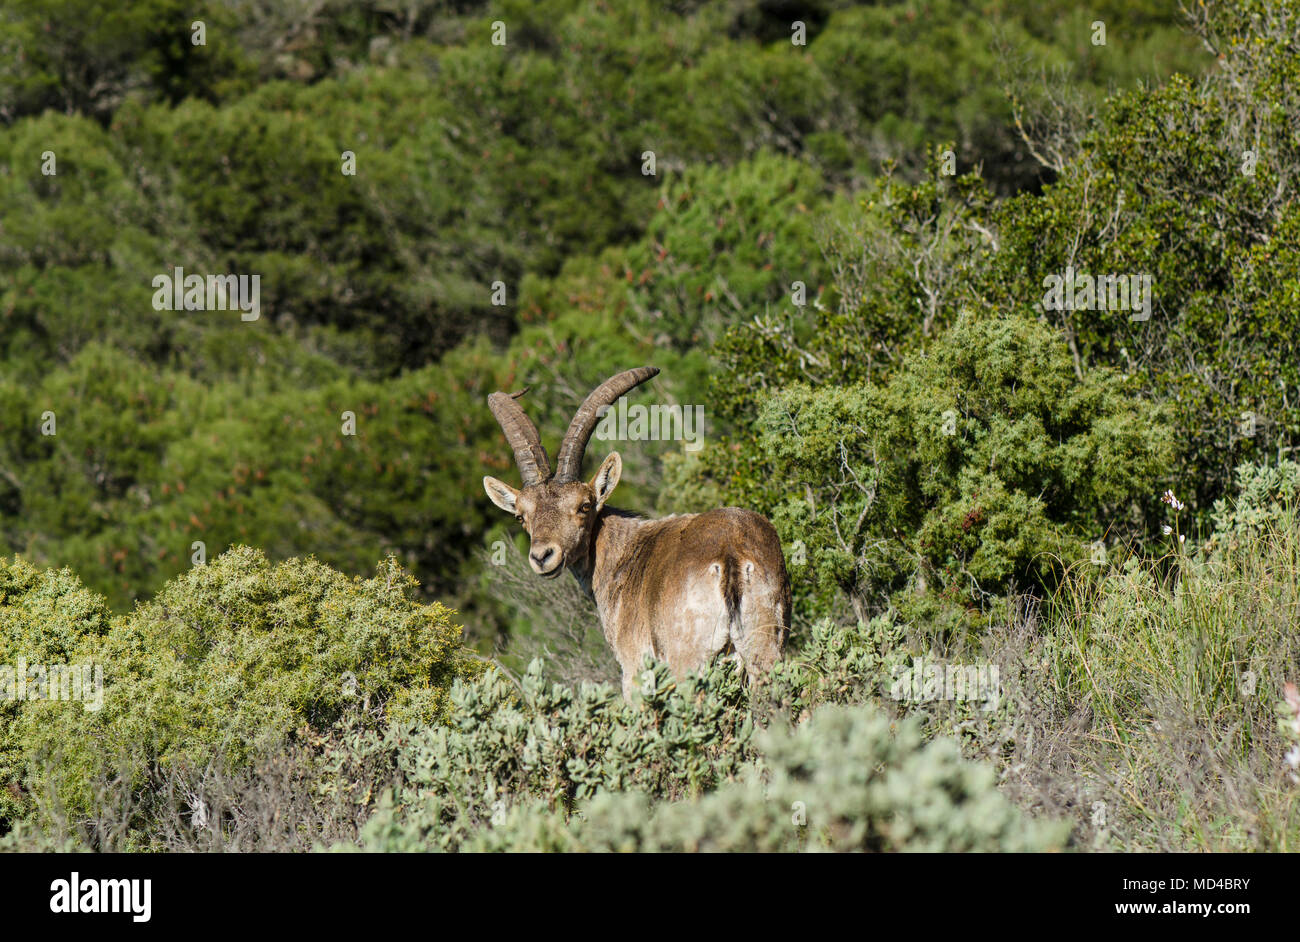 Ibex Espagnol Espagnol, chèvre sauvage, ou chèvre sauvage ibérique Capra pyrenaica, Sierra de Mijas, Andalousie, espagne. Banque D'Images